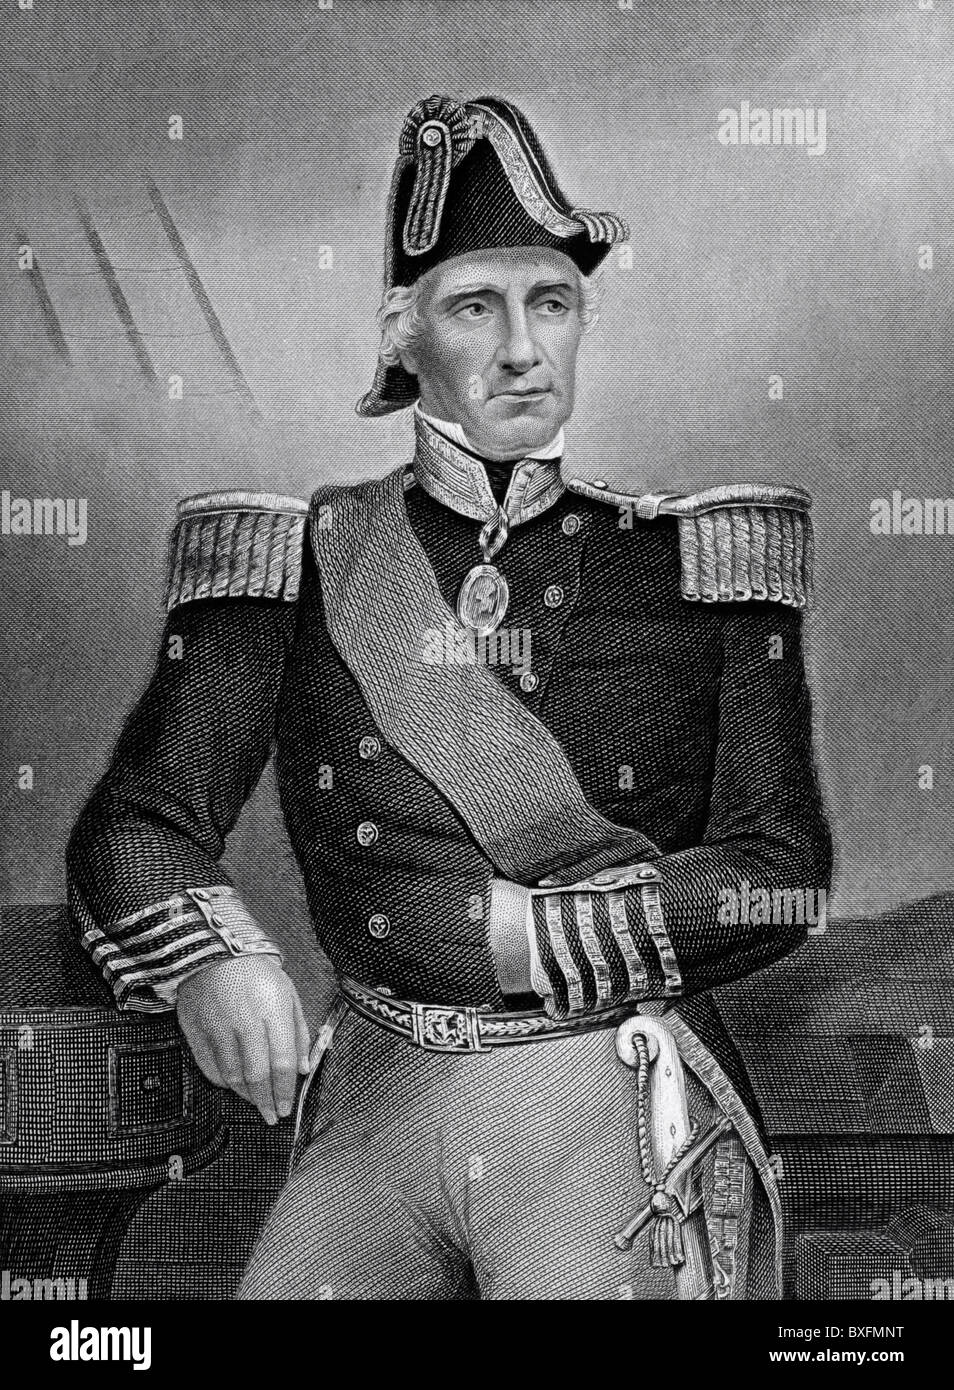 Ritratto dell'ammiraglio Sir Edmund Lyons (1780-1858) Comandante Navale britannico & Diplomat. Royal Navy. Comandante della flotta del Mar Nero. Illustrazione o incisione vintage Foto Stock